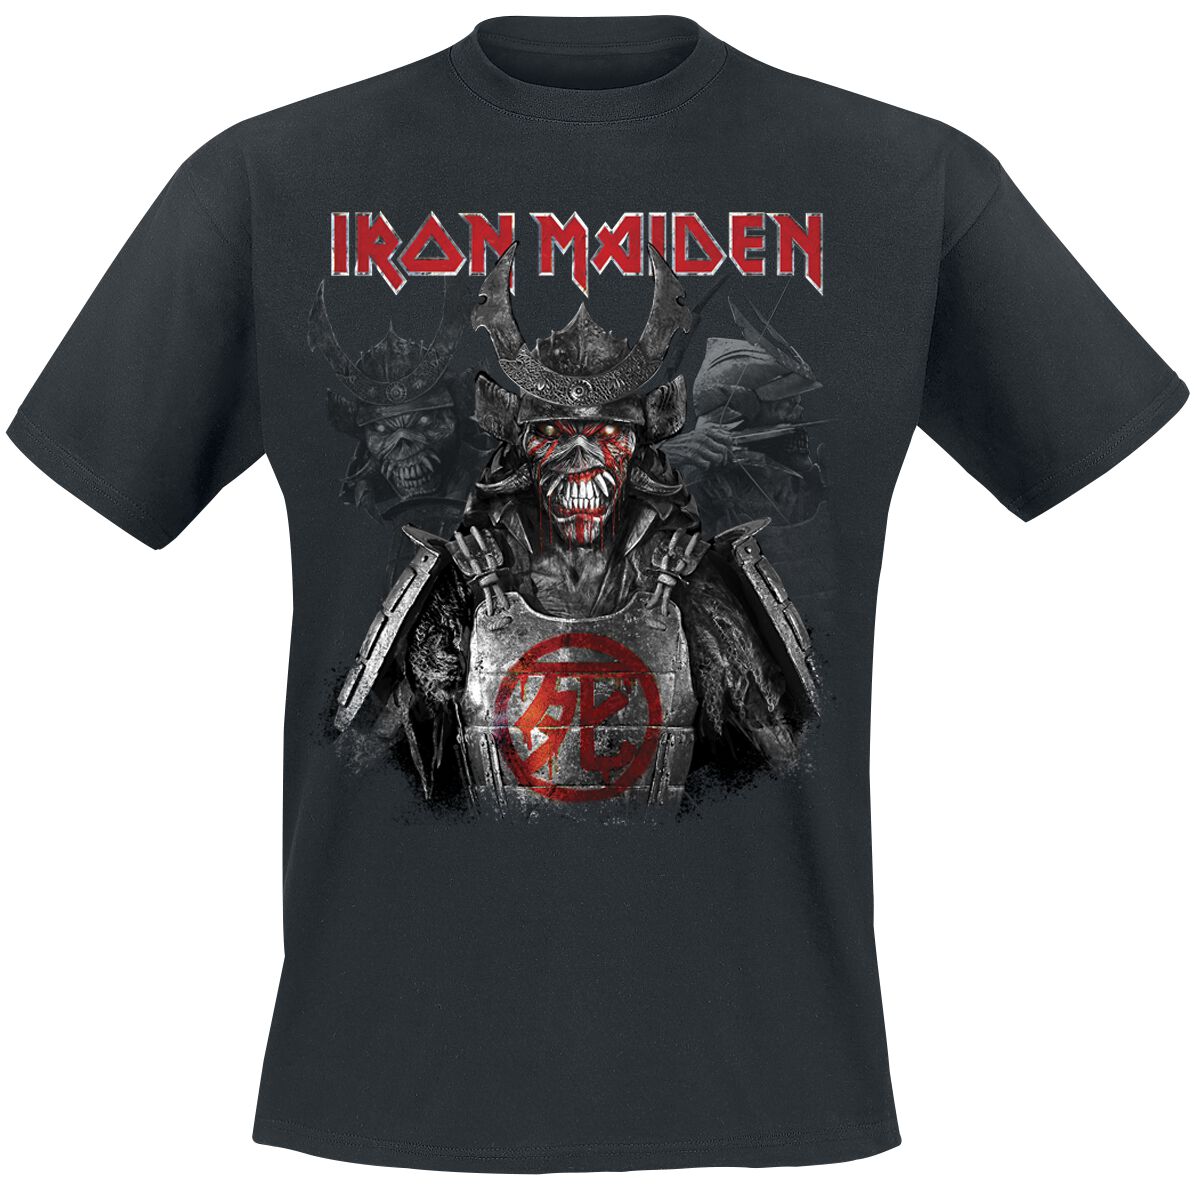 Iron Maiden T-Shirt - Senjutsu Heads - S bis 4XL - für Männer - Größe 3XL - schwarz  - Lizenziertes Merchandise!